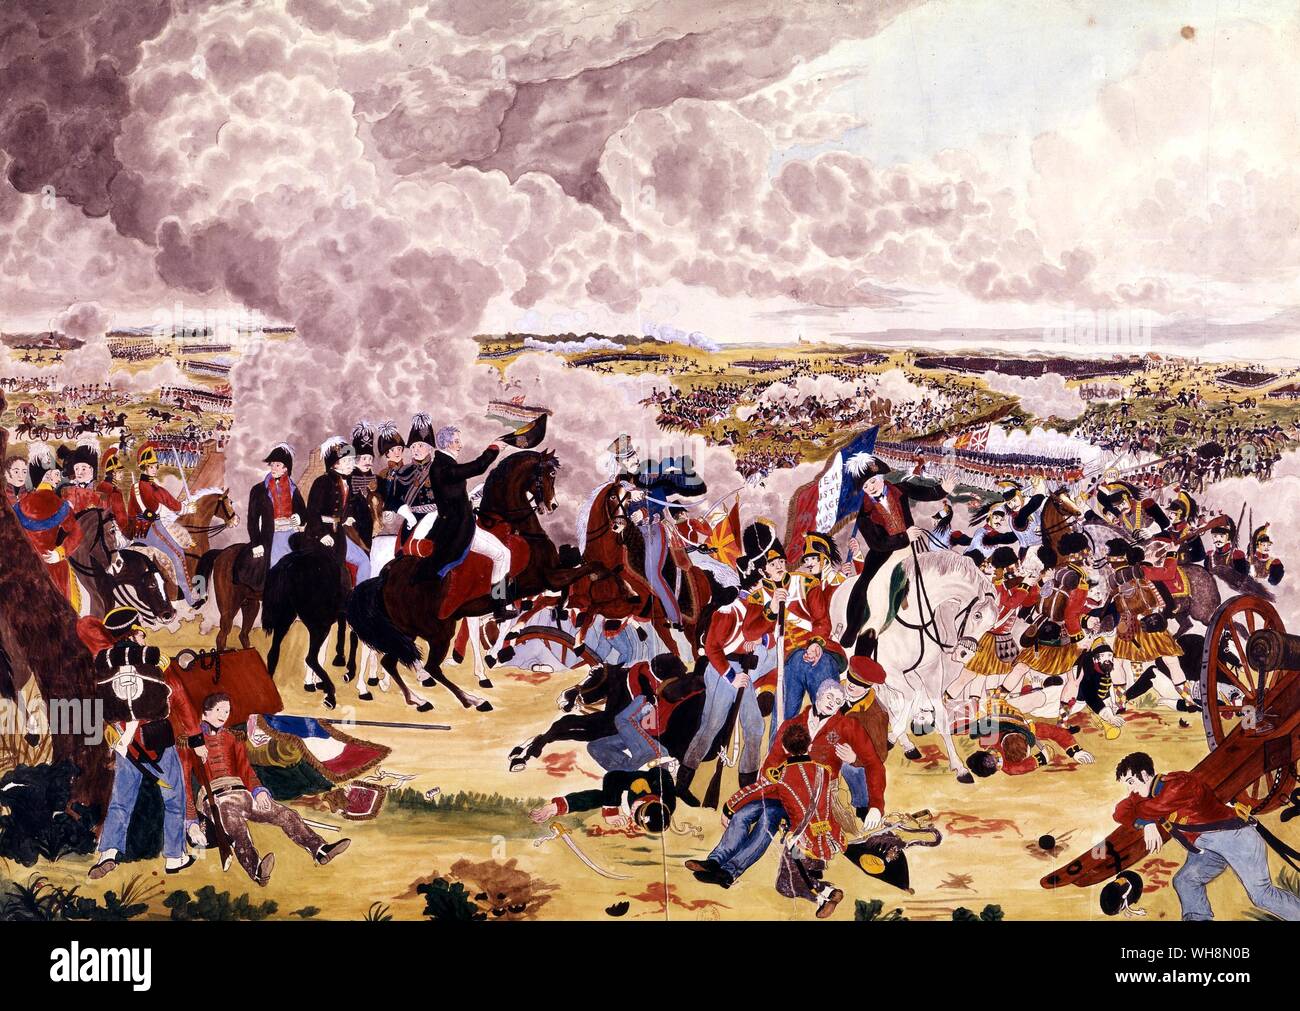 Der Höhepunkt der Schlacht von Waterloo, 18. Juni 1815 - Wellington Bestellungen der Alliierten Armee nach der Repulse der Leibwache, von den englischen Fußschutz vorzurücken. Gemälde von John Augustus Atkinson, der Augenzeuge war. Bibliotheque Nationale, Paris Stockfoto